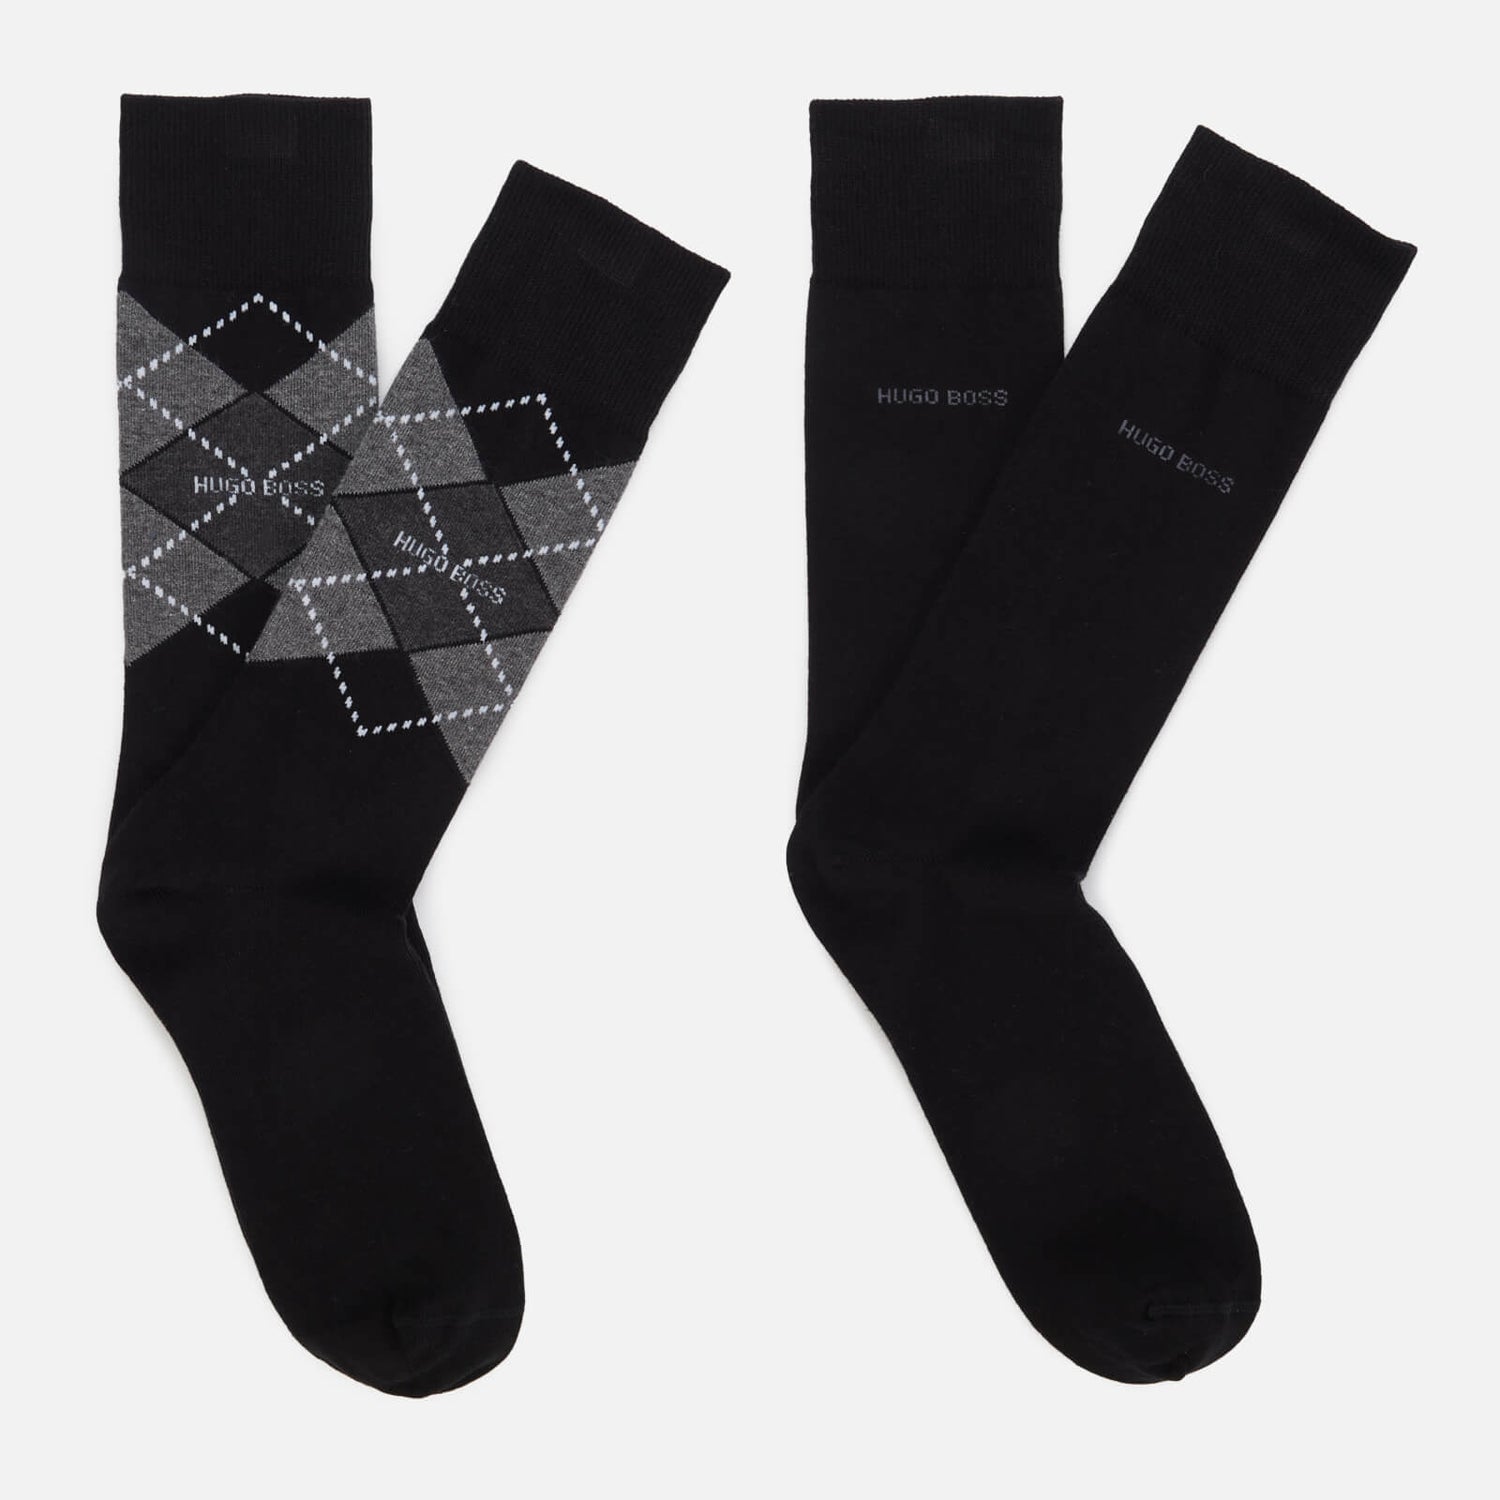 BOSS Bodywear Men's 2-Pack Argyle Socks - Black